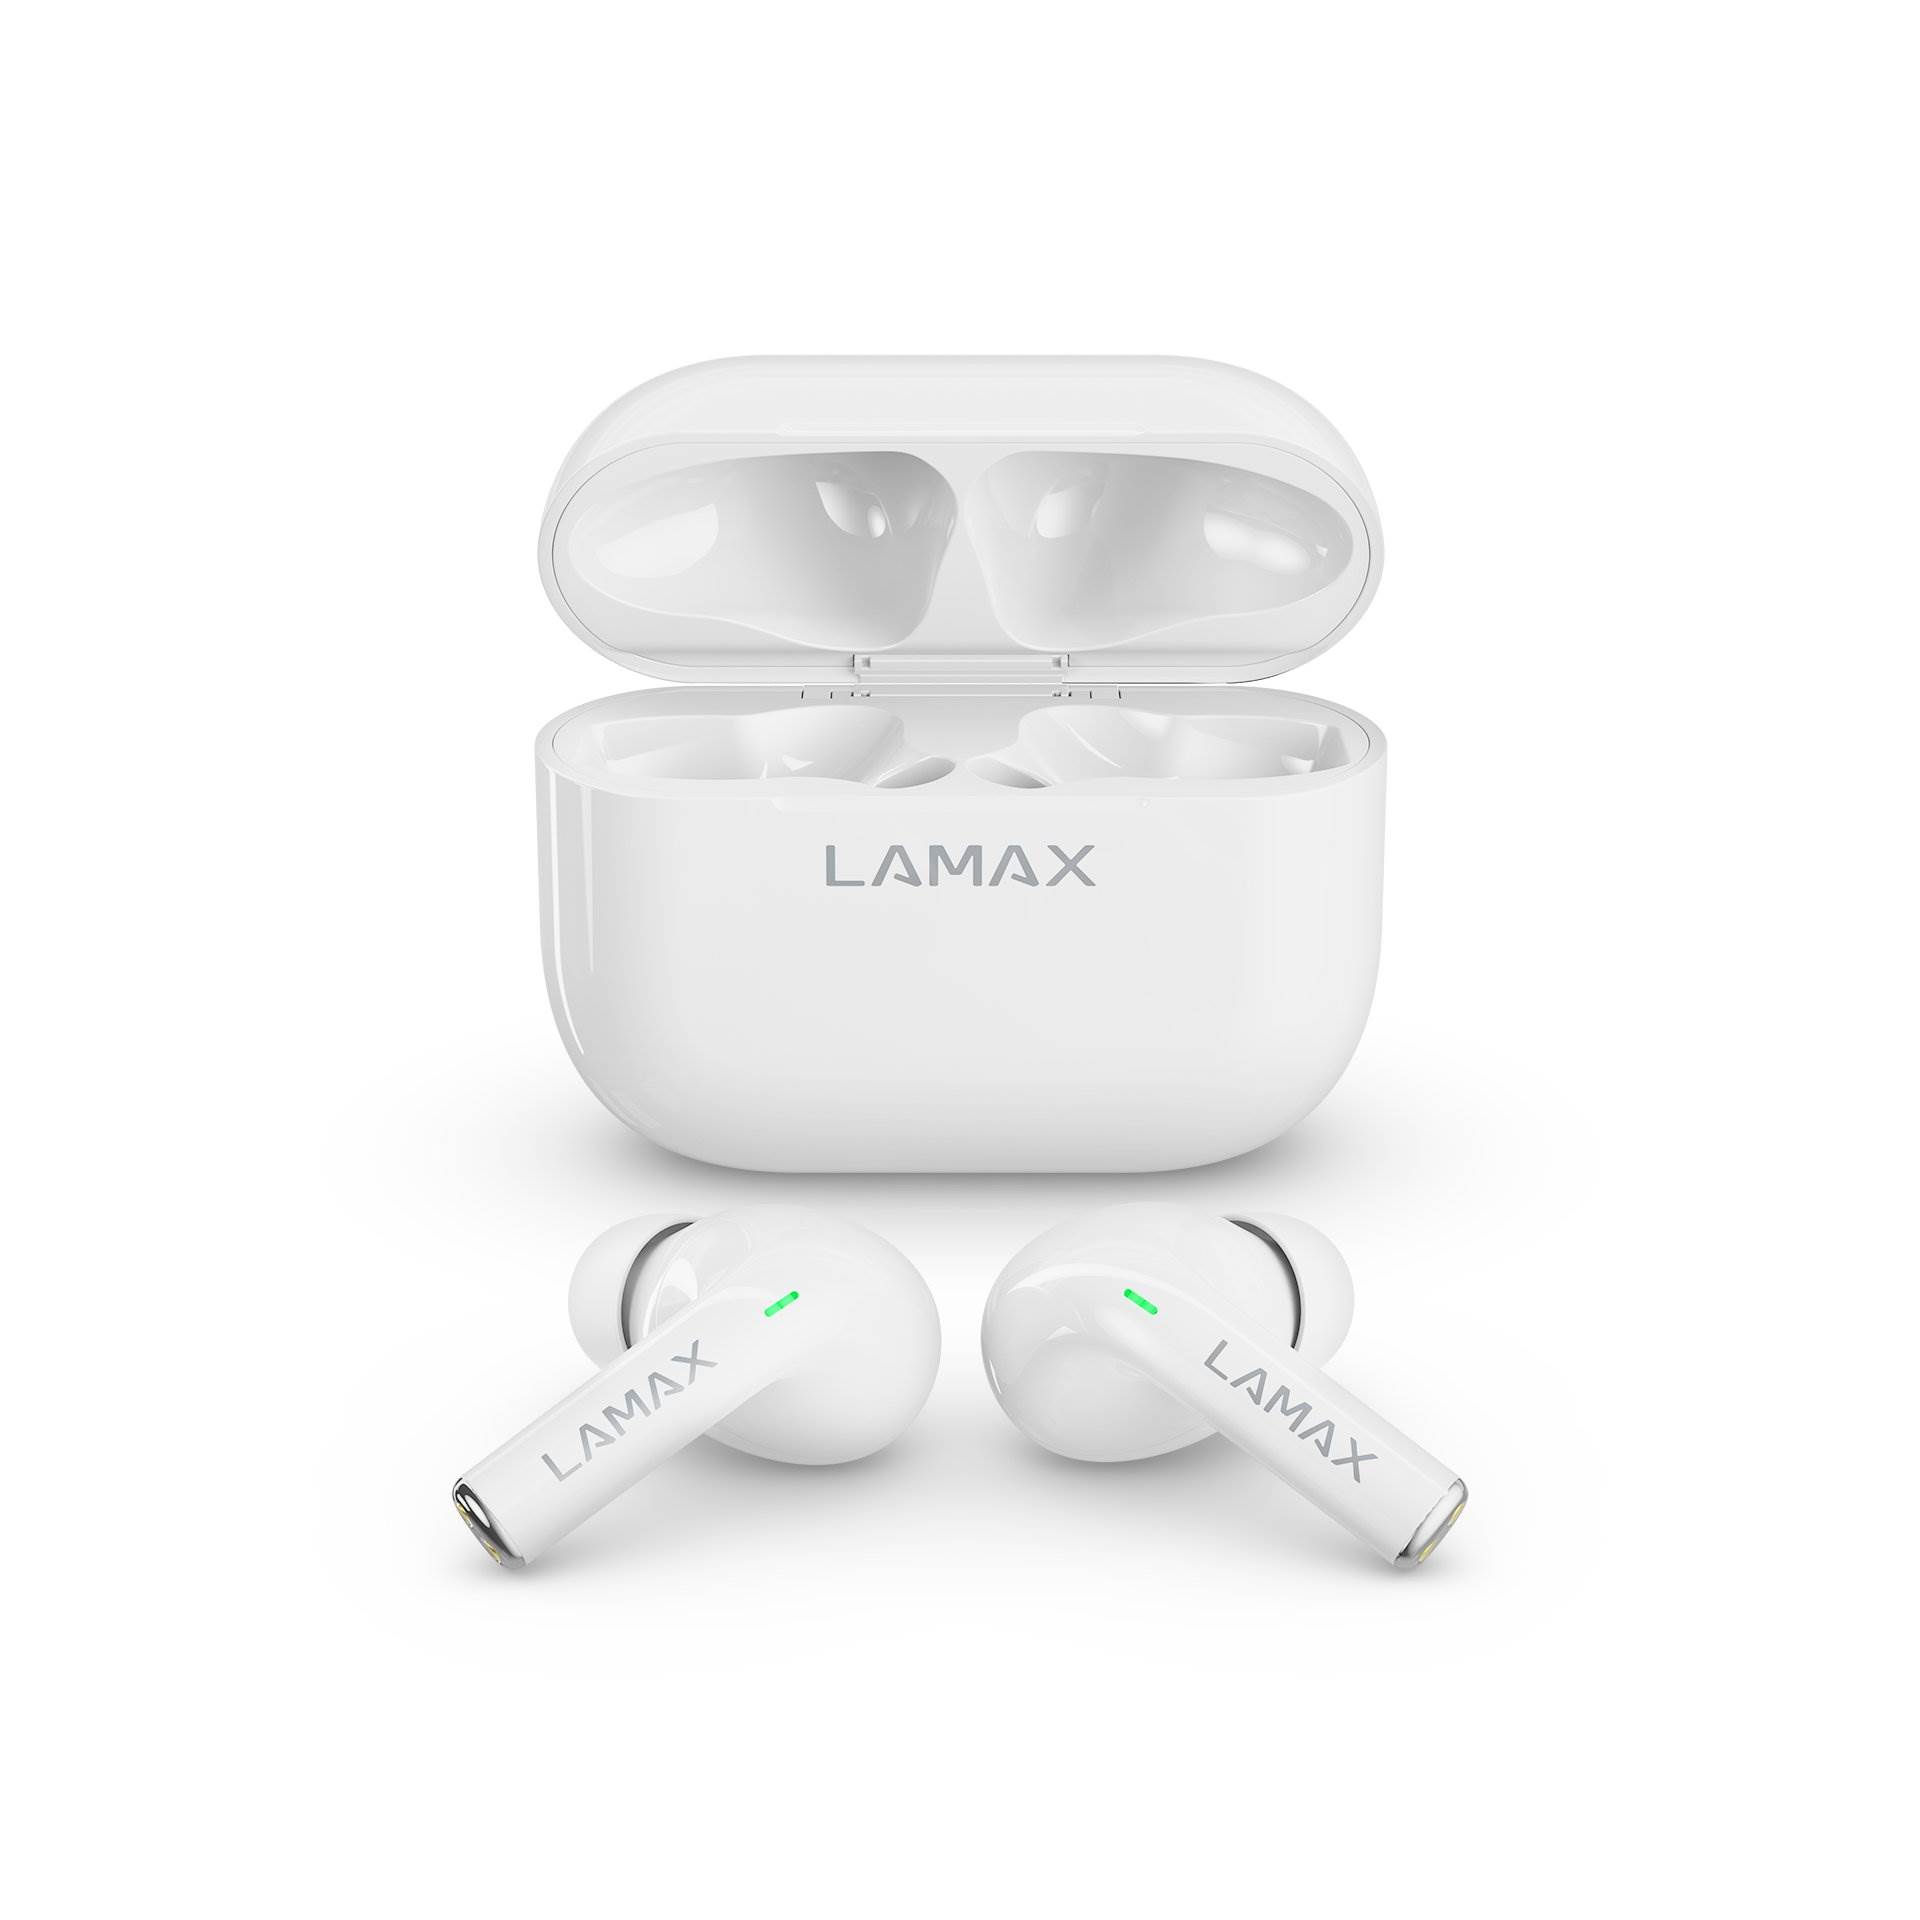 LAMAX Clips1 špuntová sluchátka - bílé7 